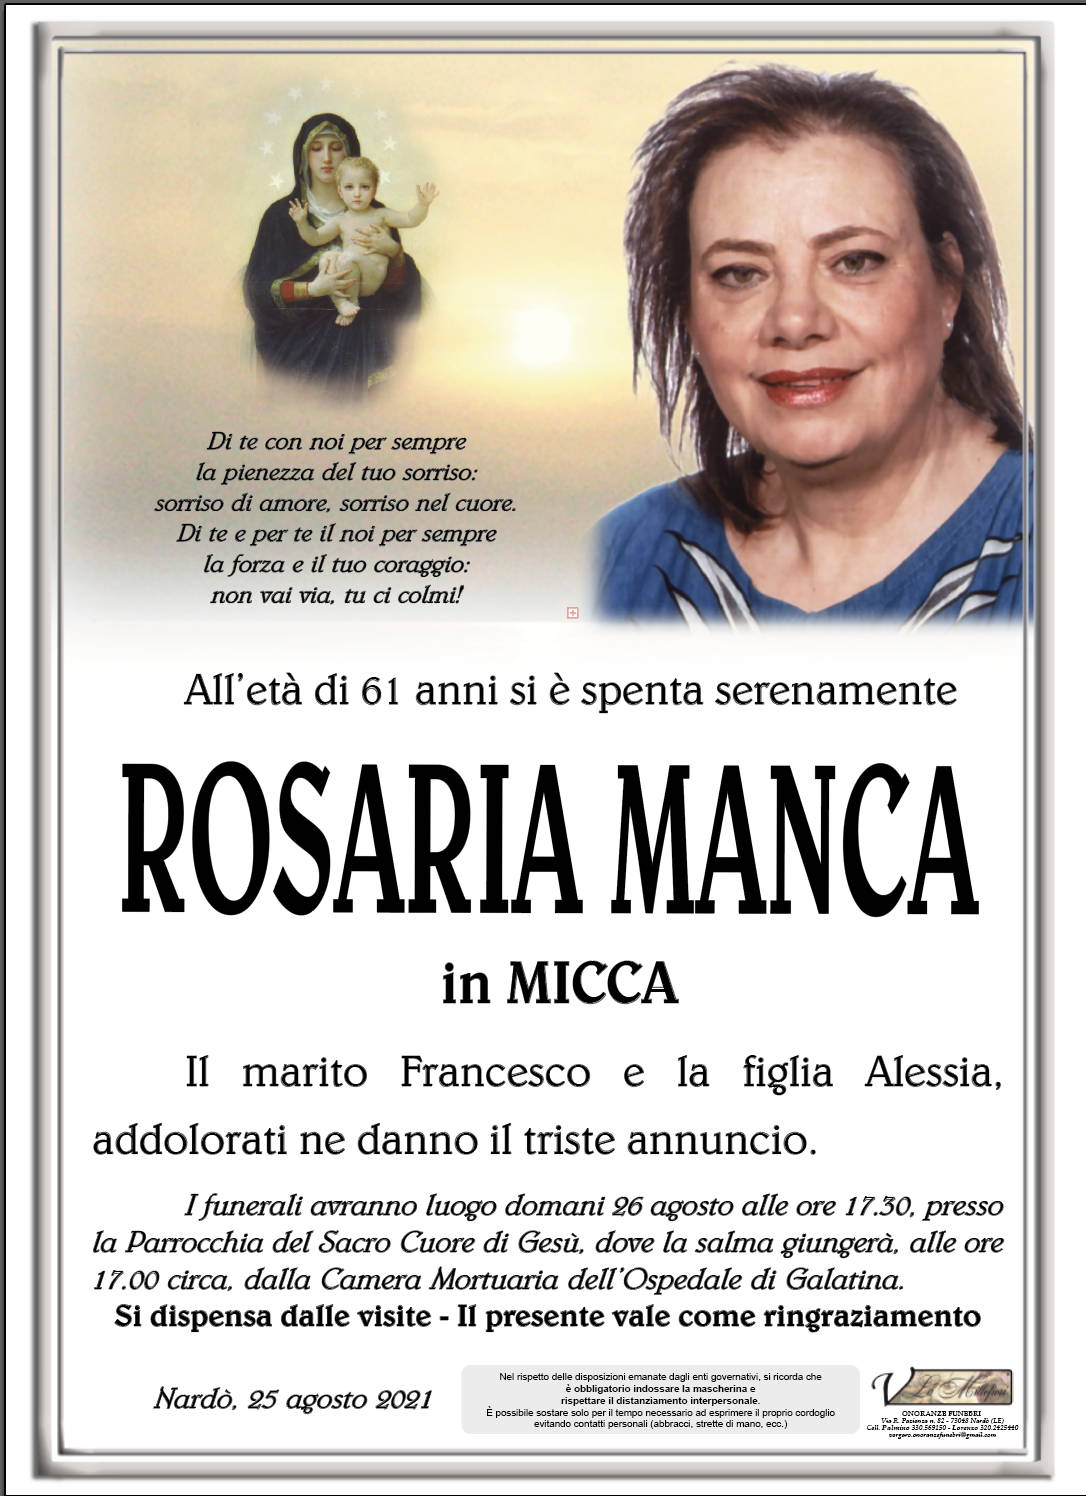 Rosaria Manca